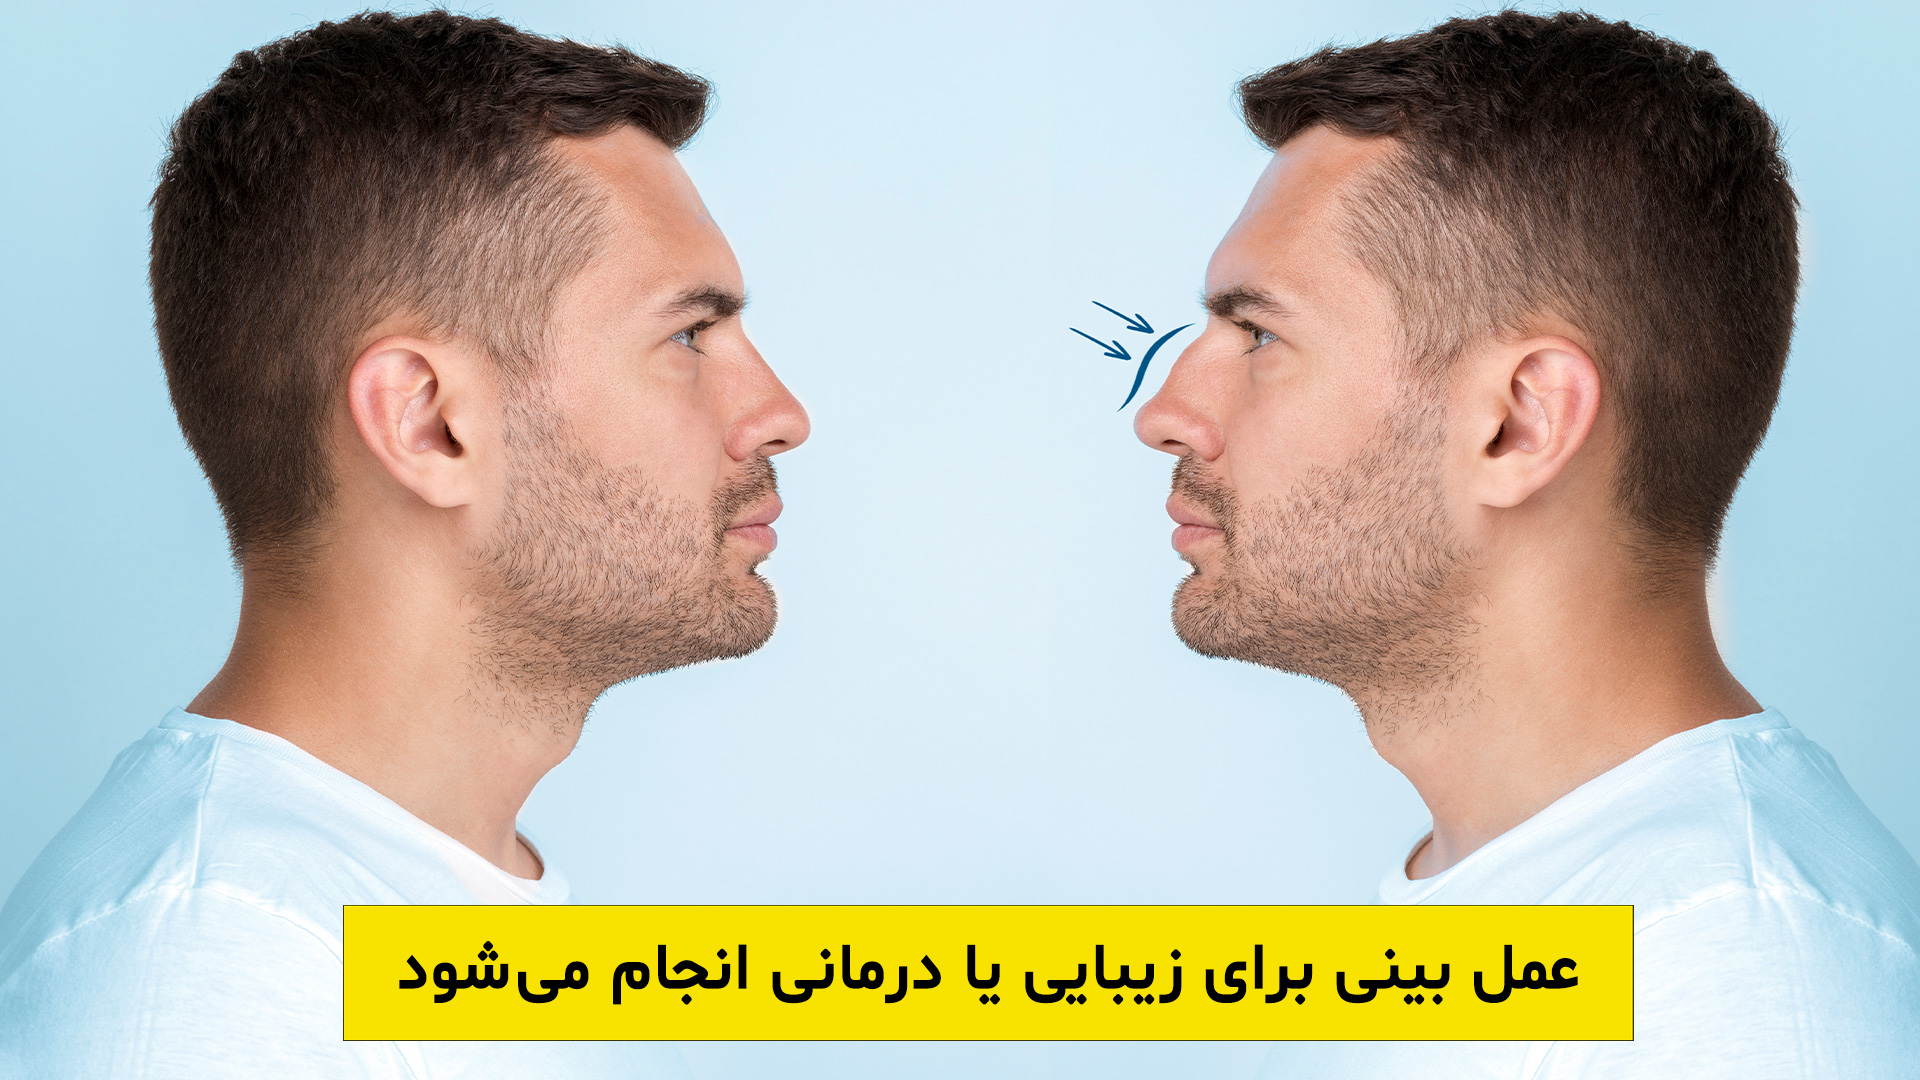 عمل بینی در شیراز با هدف زیبایی یا درمانی انجام میشود